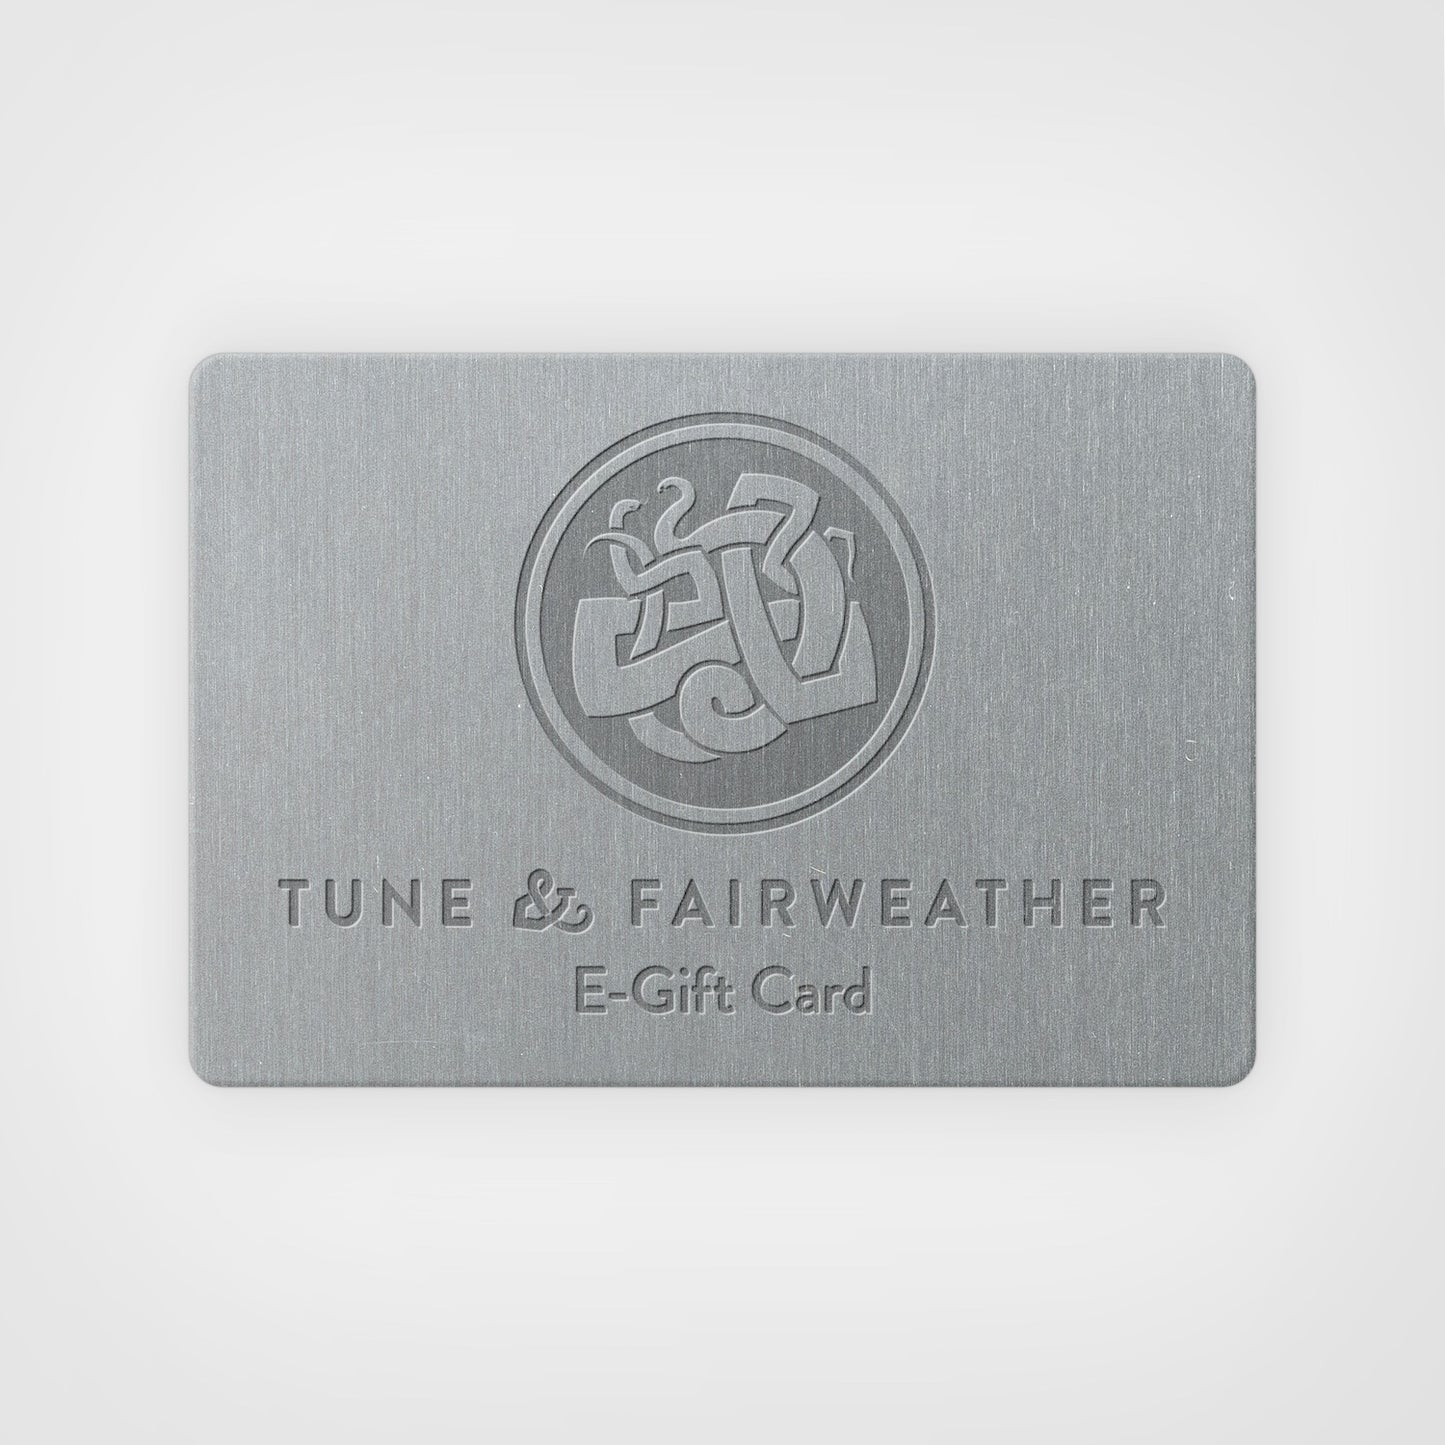 Tune & Fairweather E-Gift Card